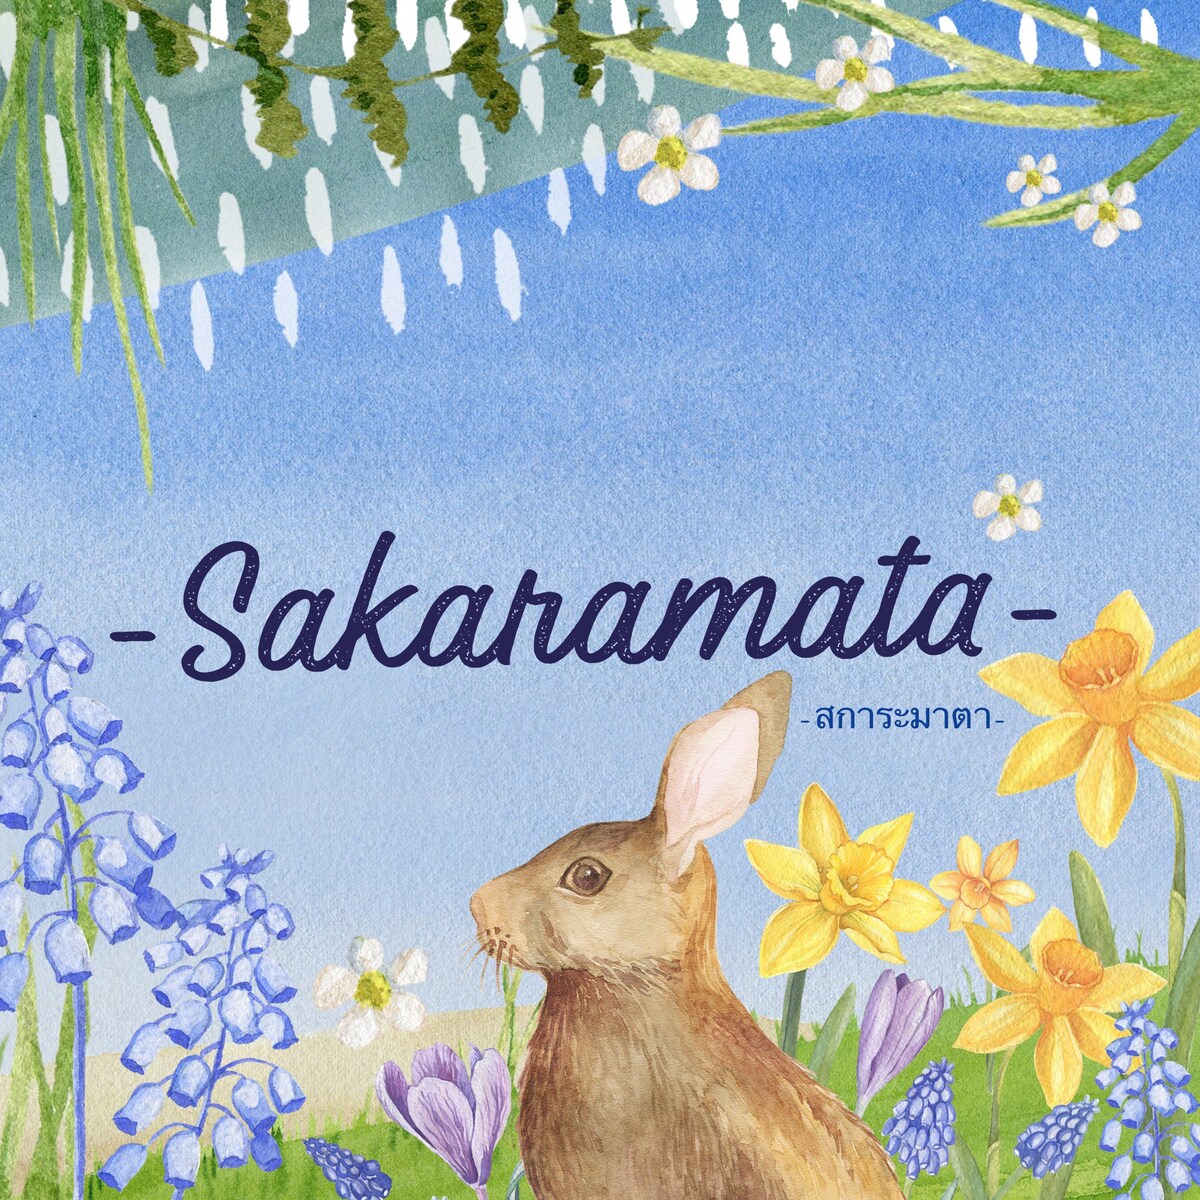 Sakaramata - Scaramata